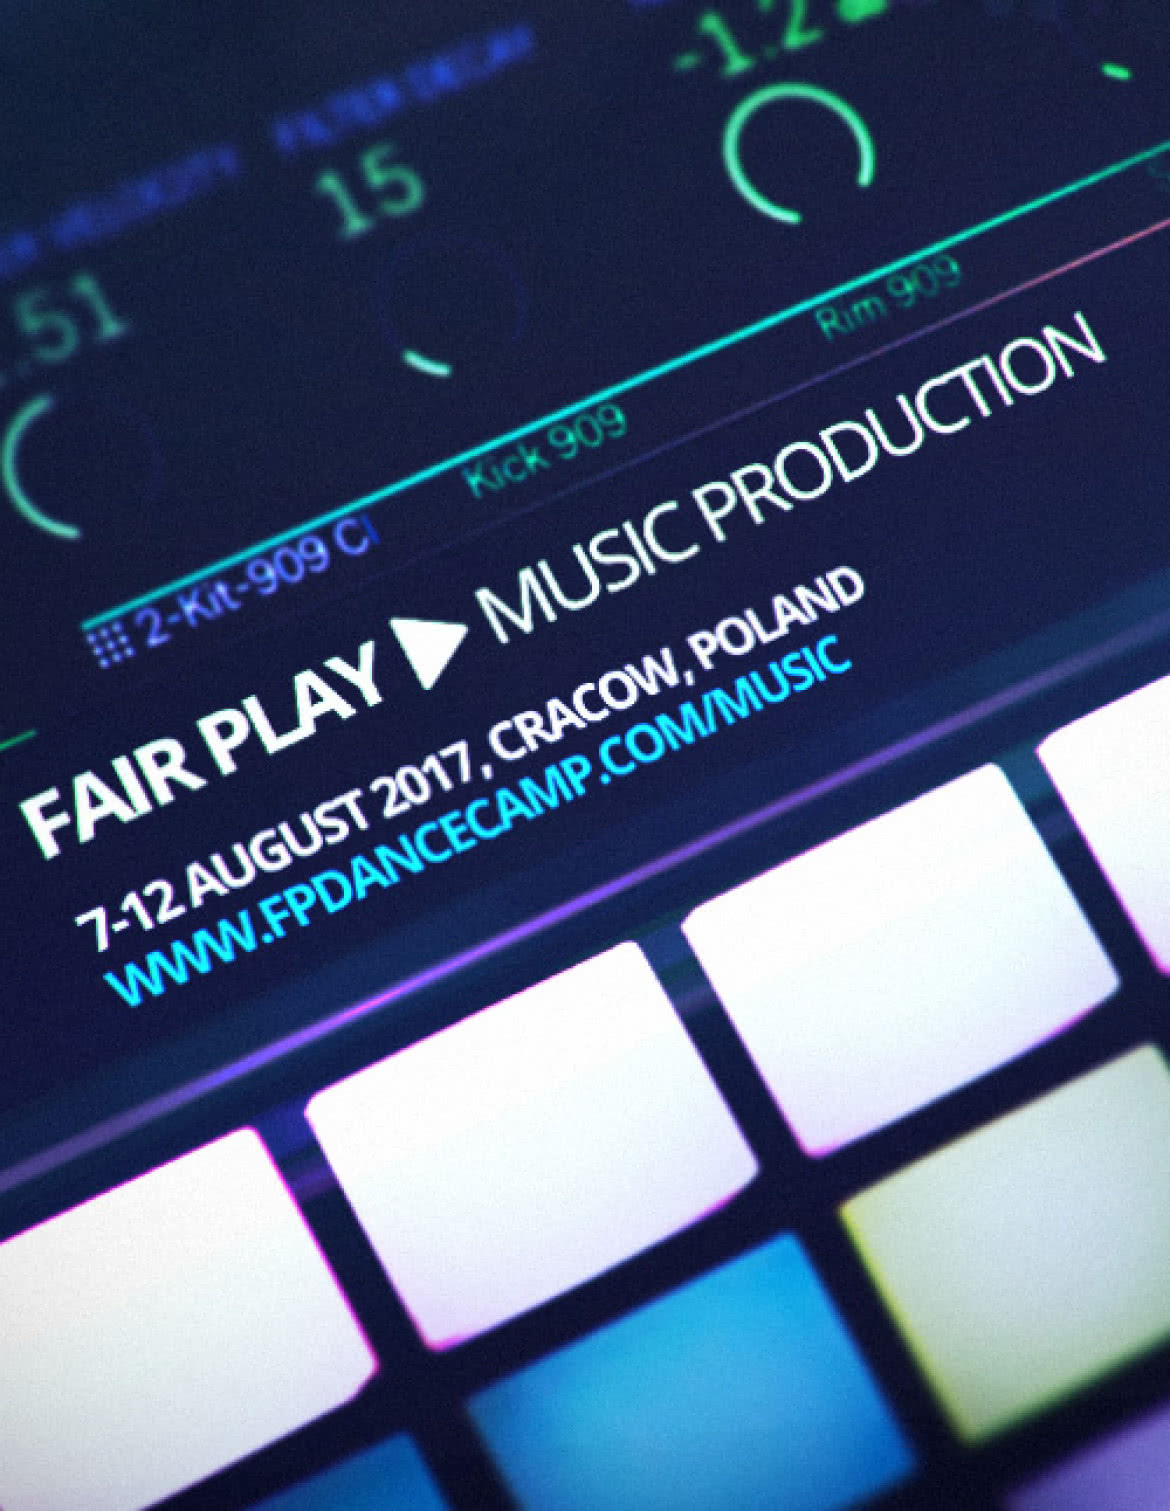 Fair Play Music Production Camp